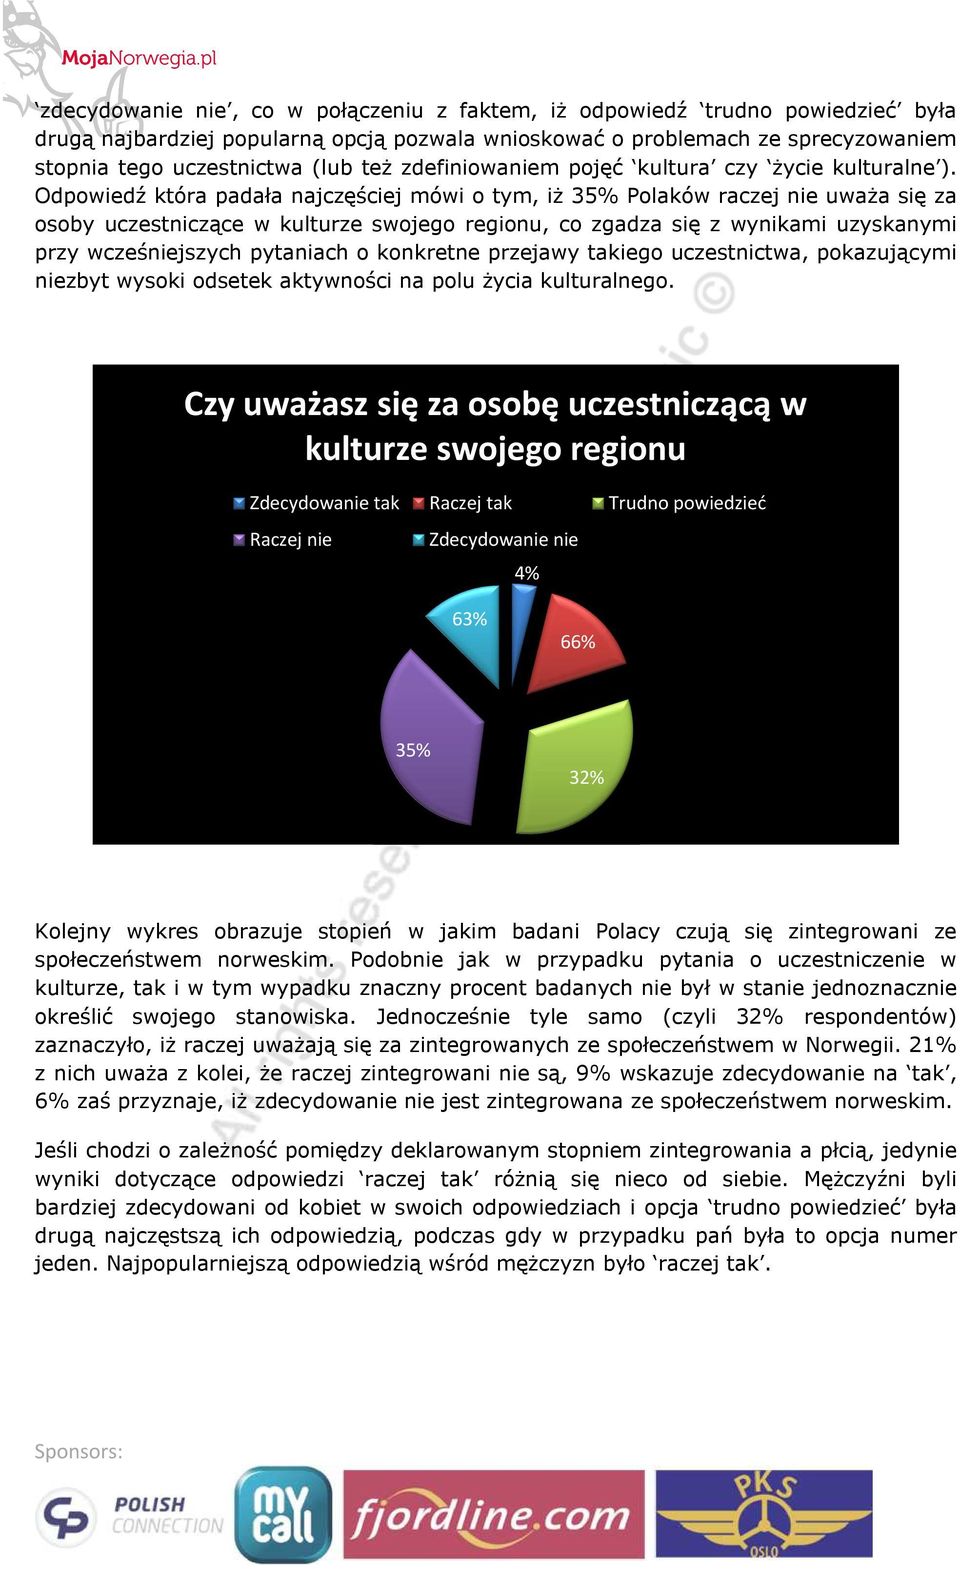 Odpowiedź która padała najczęściej mówi o tym, iż 35% Polaków raczej nie uważa się za osoby uczestniczące w kulturze swojego regionu, co zgadza się z wynikami uzyskanymi przy wcześniejszych pytaniach